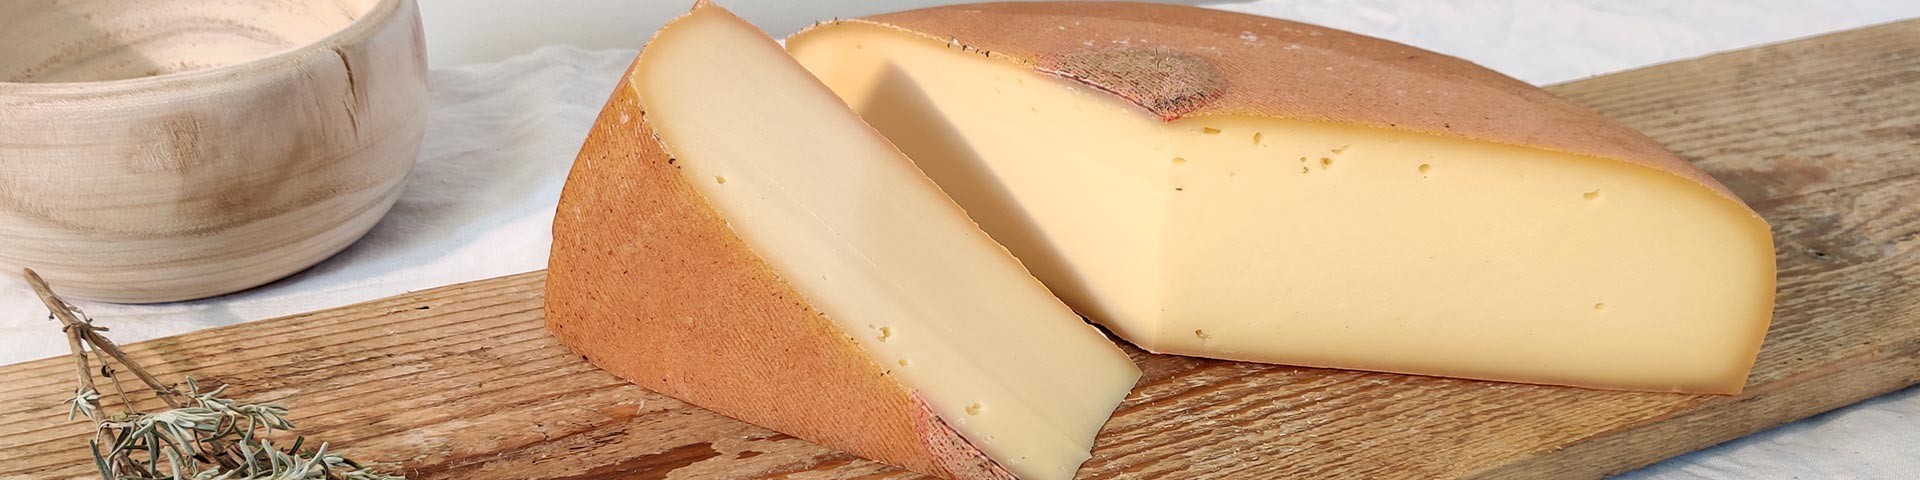 Les fromages de Savoie au lait de vache